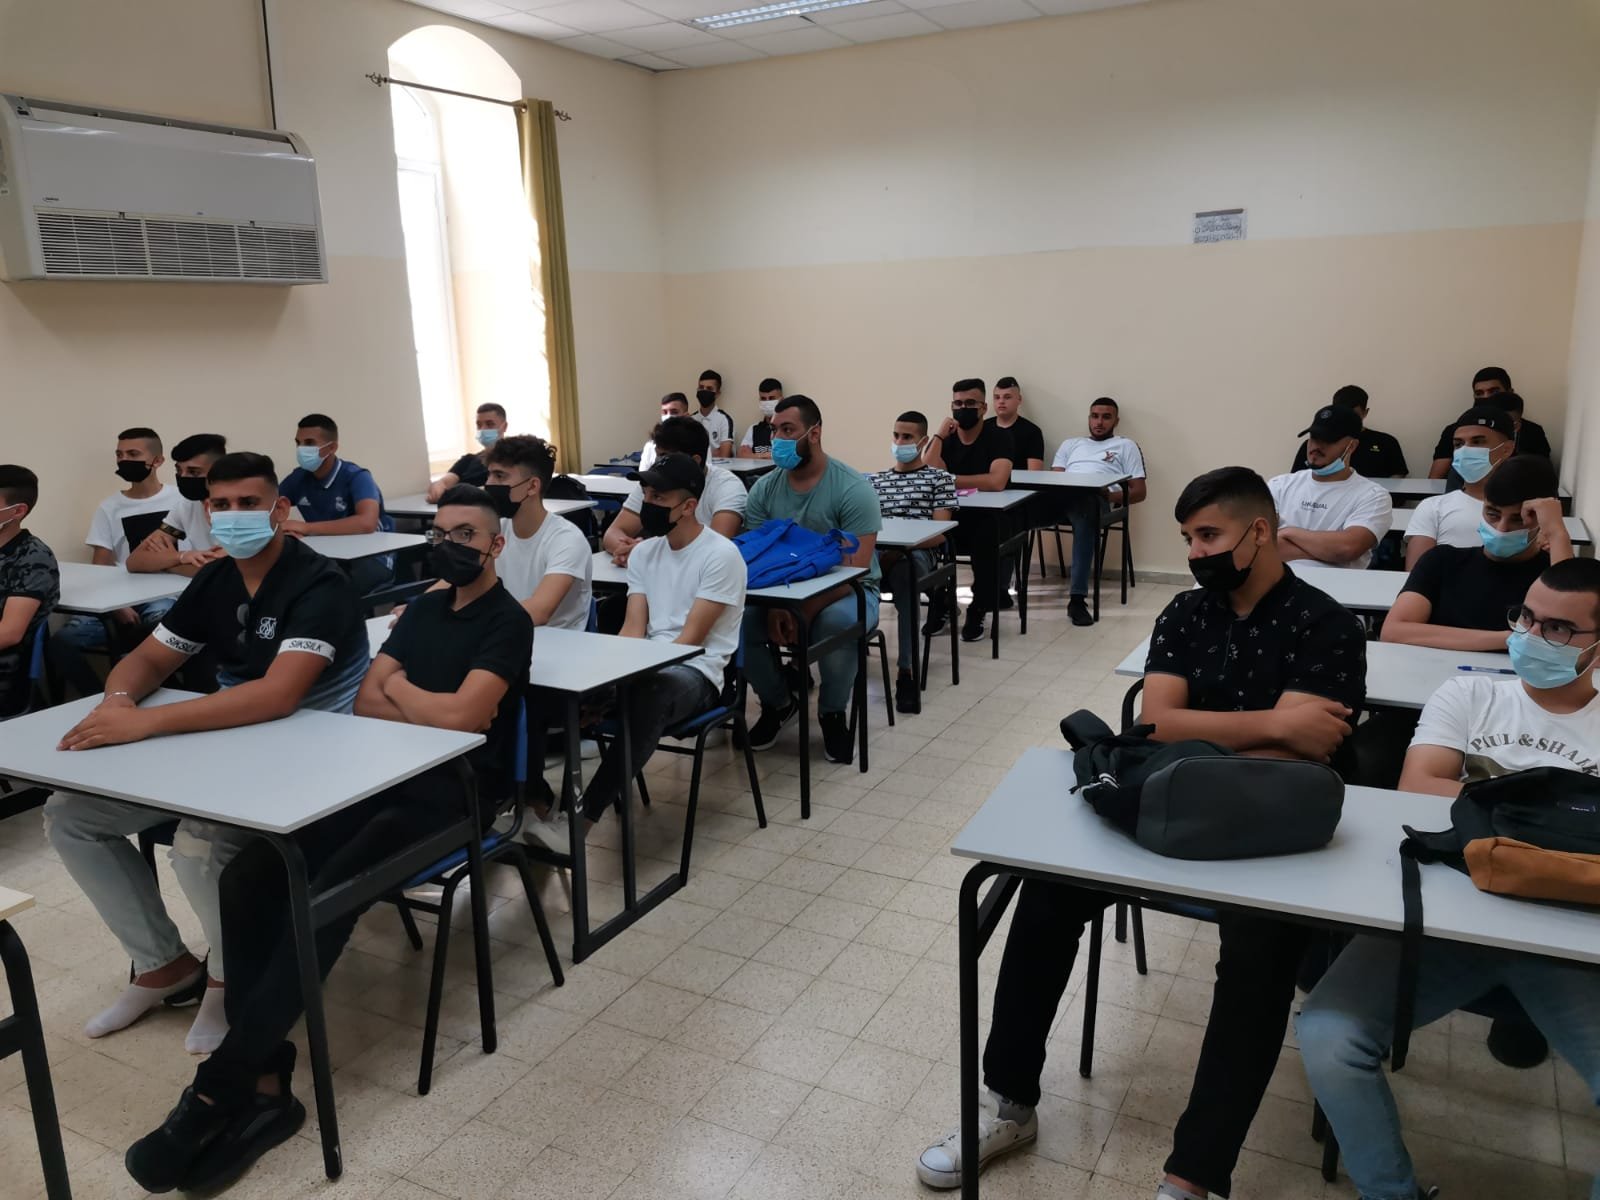 كيف افتتحت مدارس القدس العام الدراسيّ اليوم-8